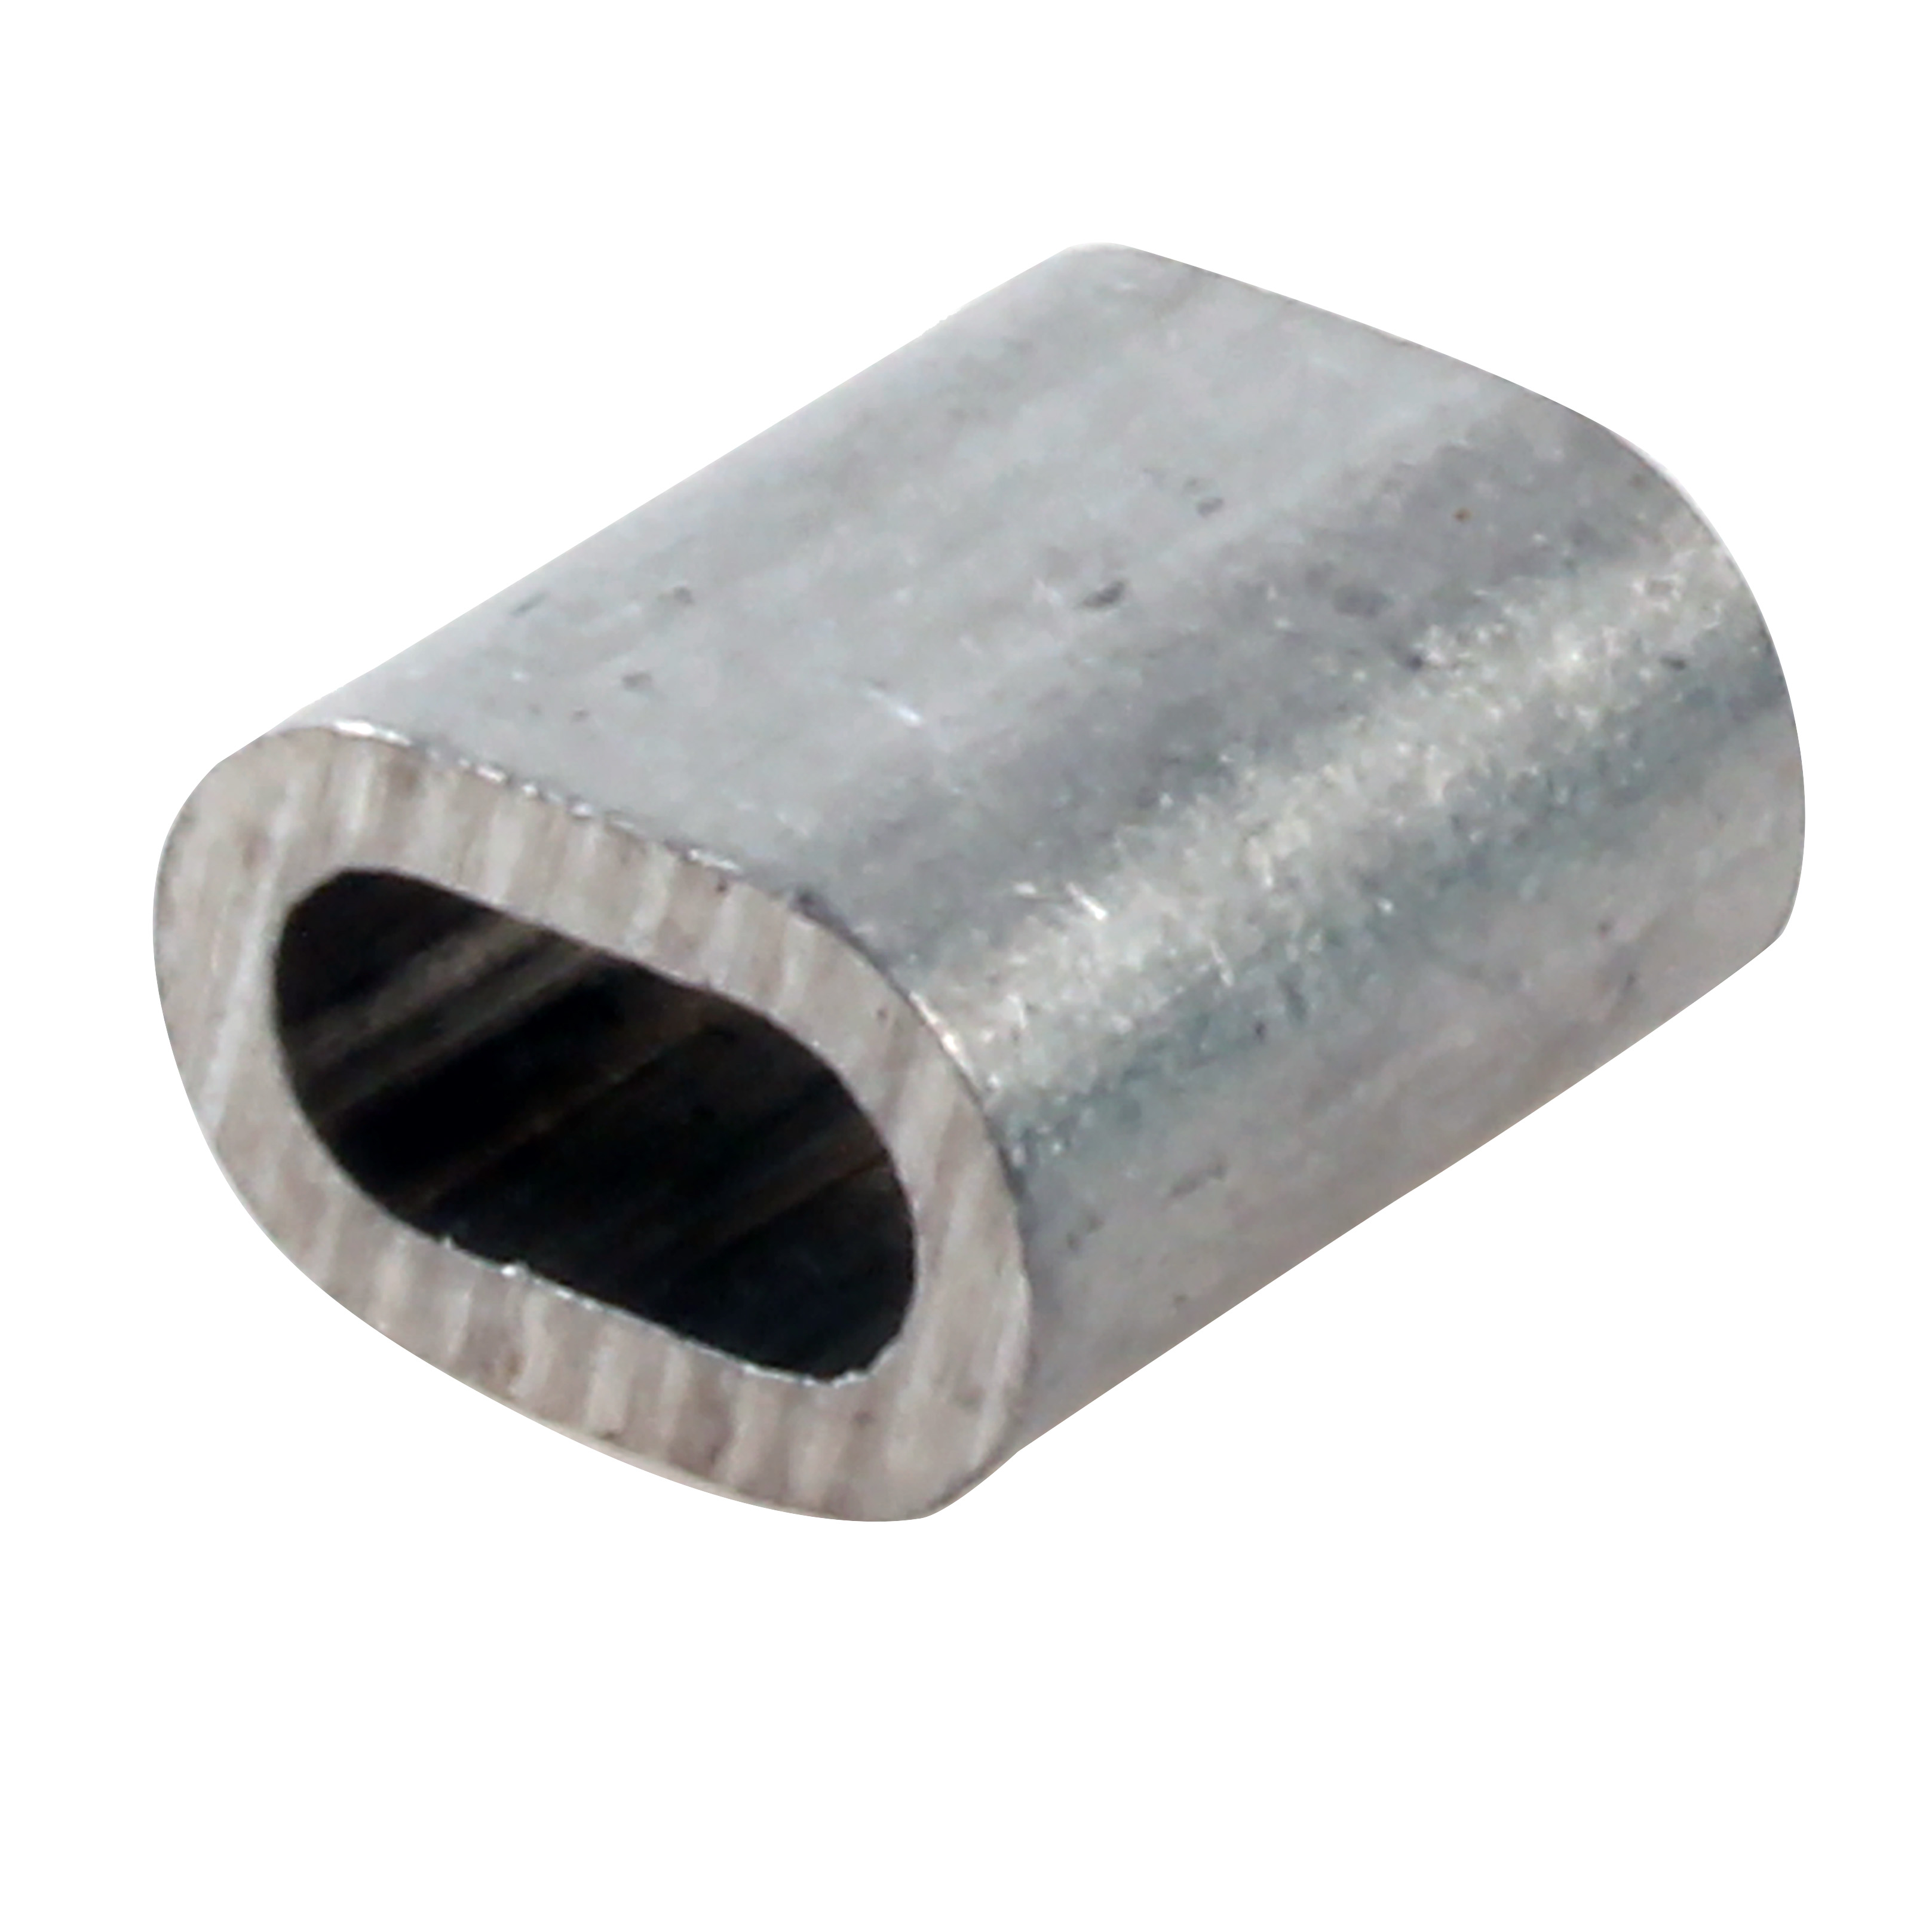 Manicotto ovale per cavo - Per la crimpatura di un cavo in acciaio - Alluminio grezzo - max 100°C